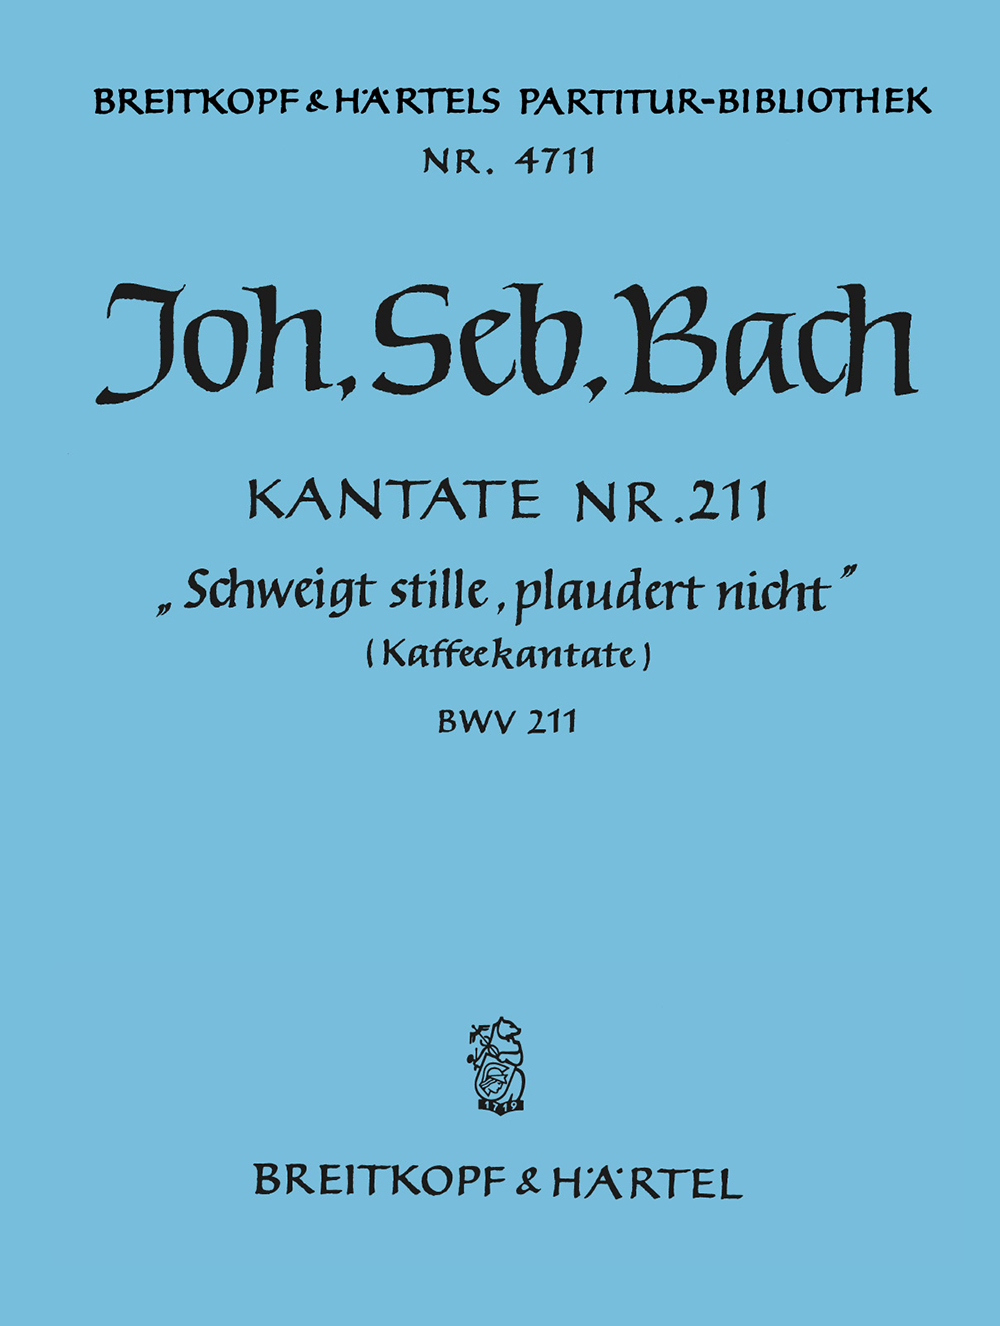 Johann Sebastian Bach: Schweigt stille  plaudert nicht: Score